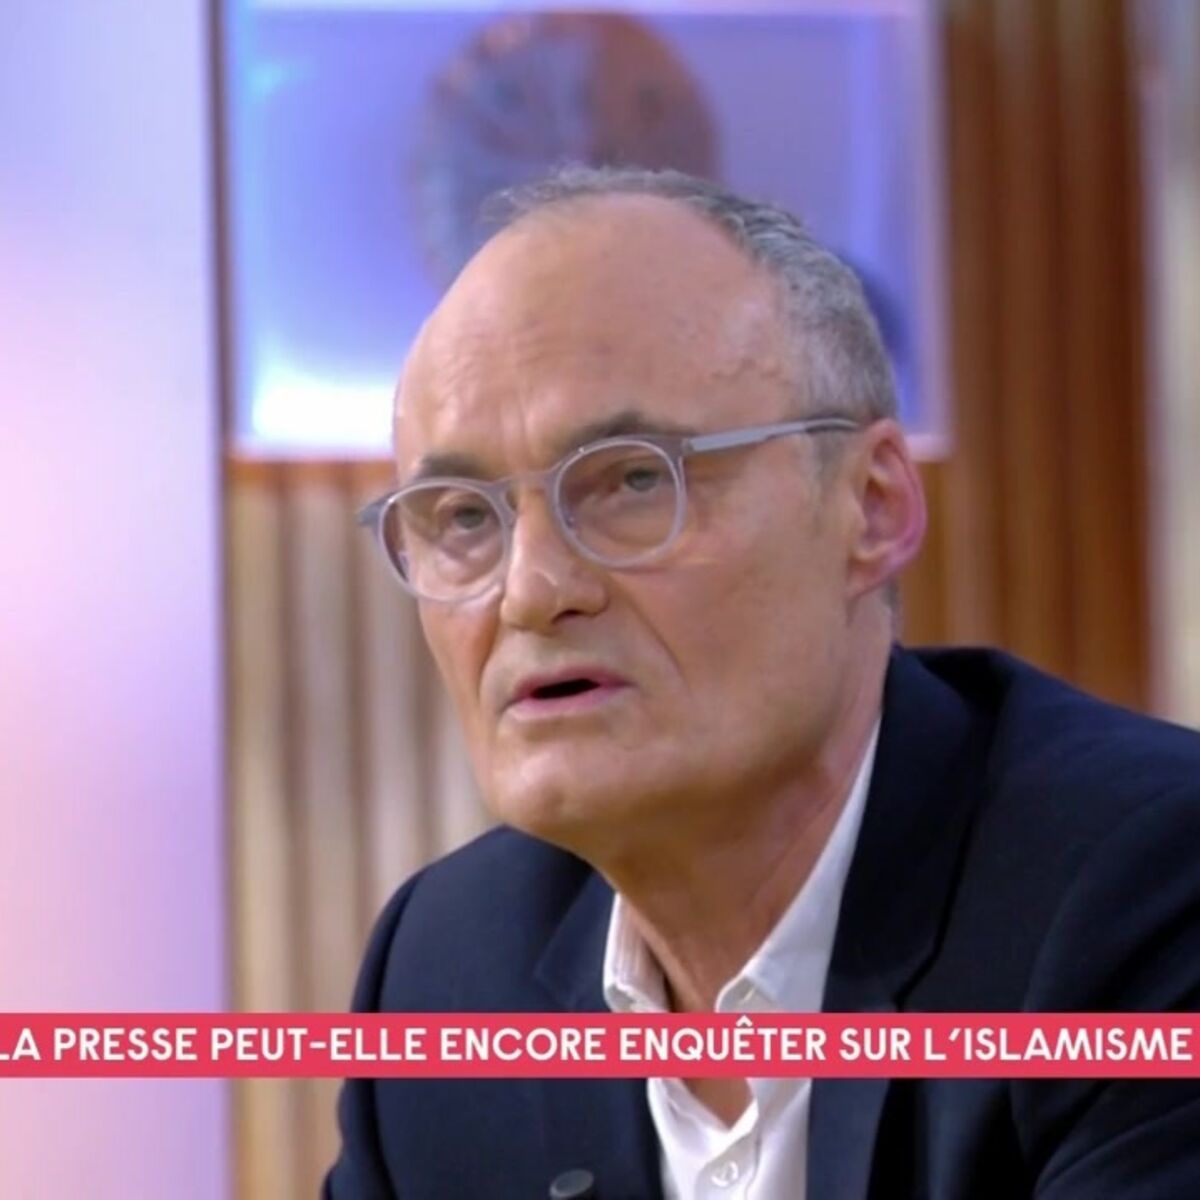 Ophelie Meunier Menacee Apres Un Reportage Sur L Islam Radical Philippe Val Ancien Directeur De Charlie Hebdo Reagit Femme Actuelle Le Mag